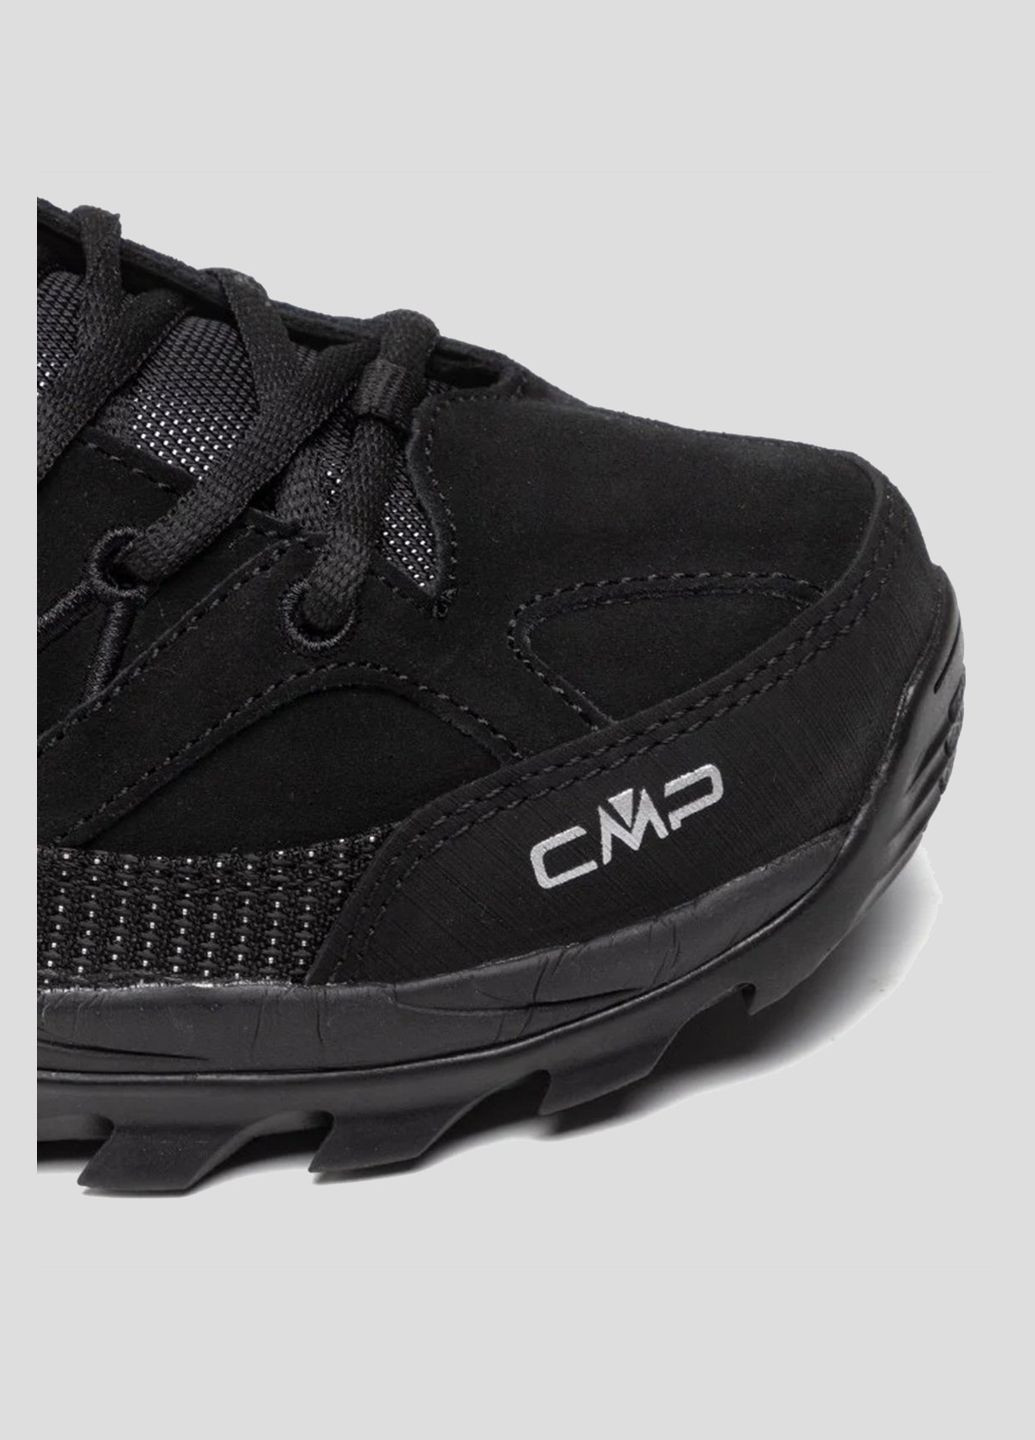 Черные демисезонные черные трекинговые кроссовки rigel low trekking shoes wp CMP